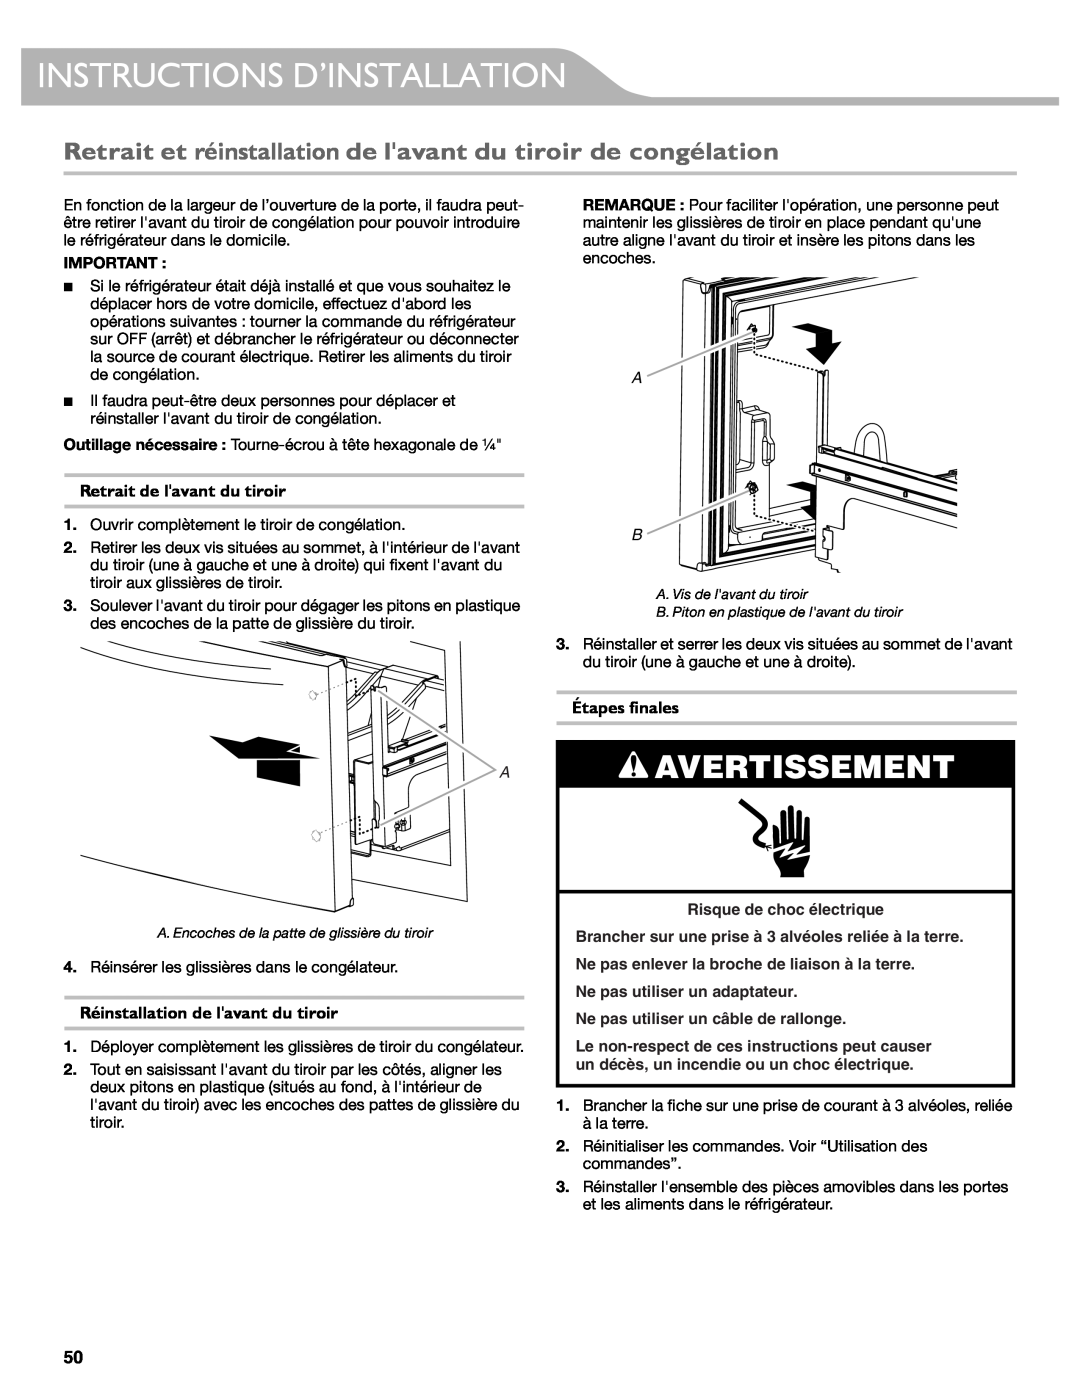 KitchenAid W10417002A manual Retrait et réinstallation de lavant du tiroir de congélation, Retrait de lavant du tiroir 